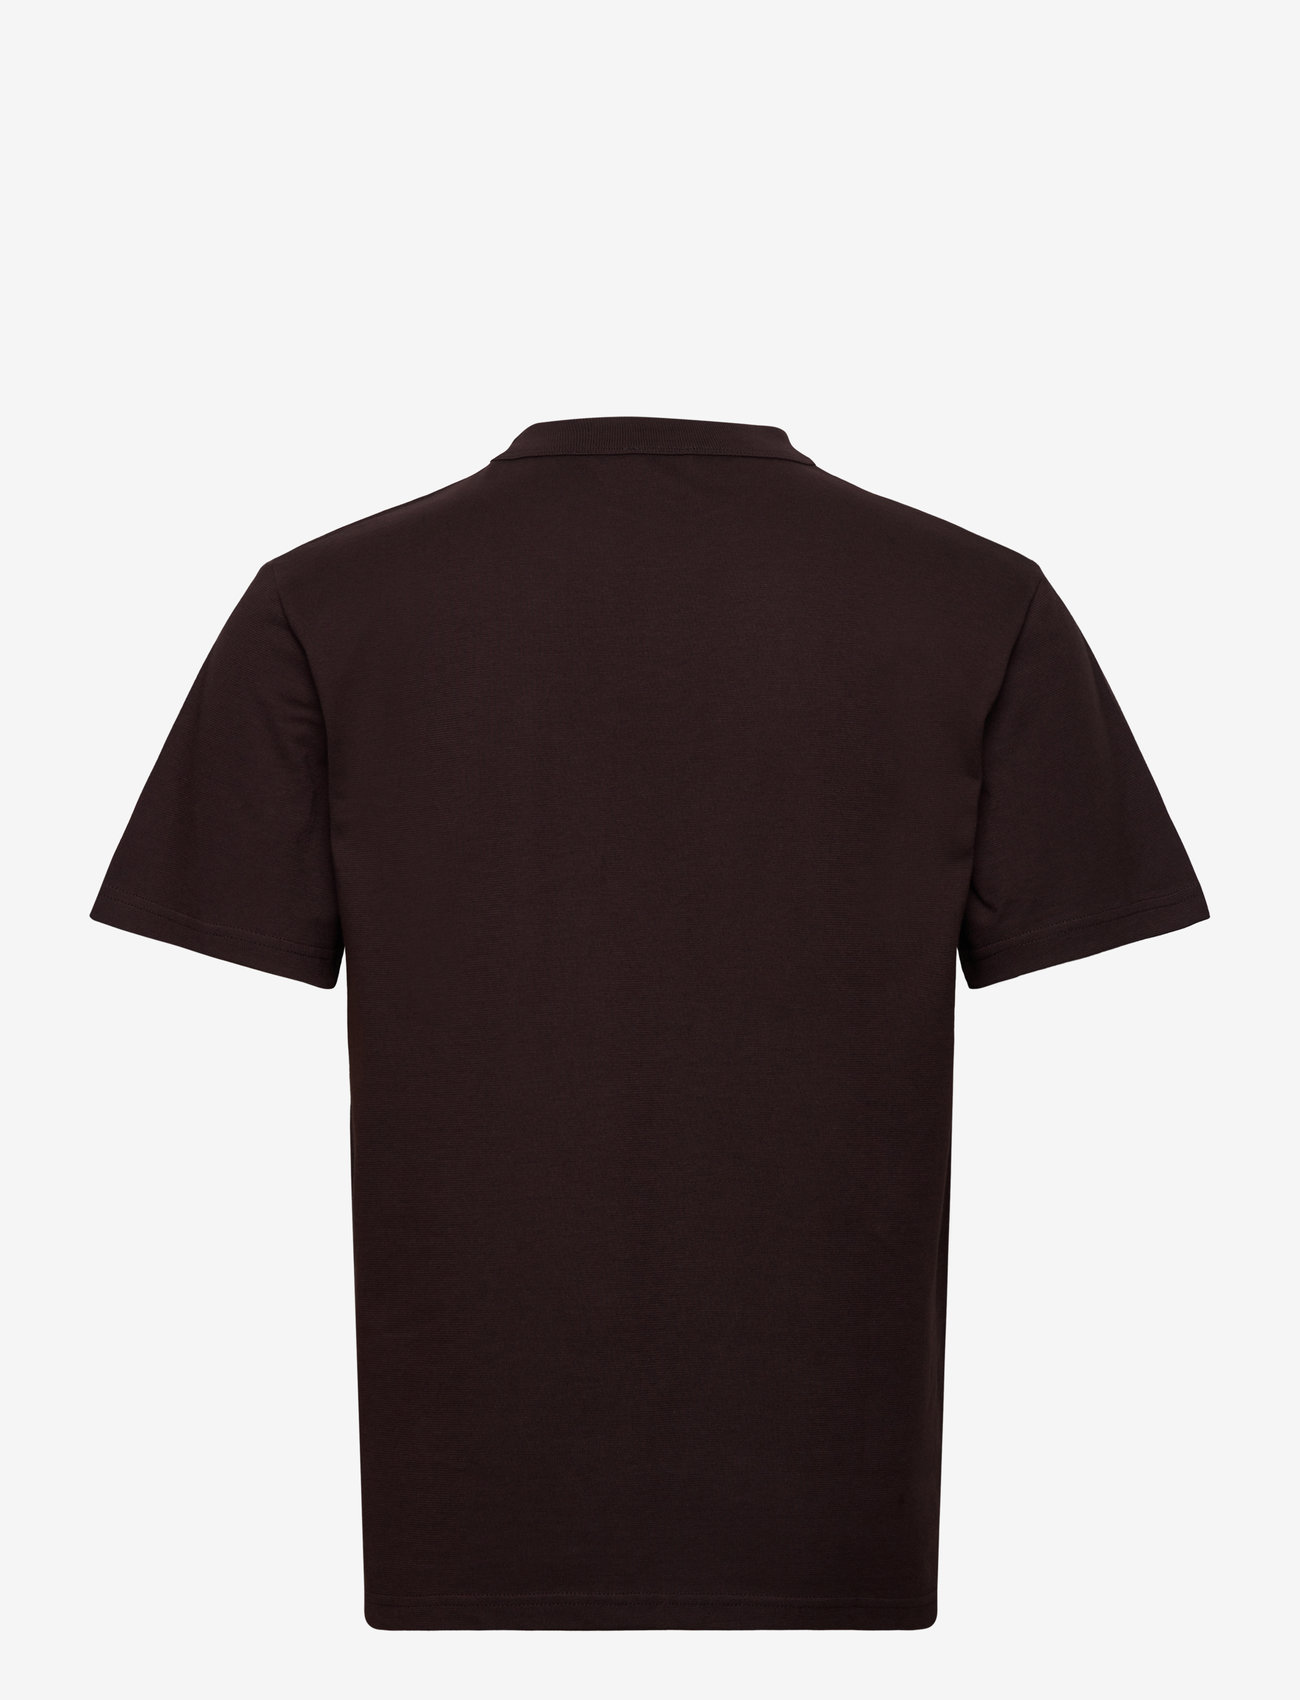 Armor Lux - Basic T-shirt "Callac" Héritage - acajou foncÉ - 1